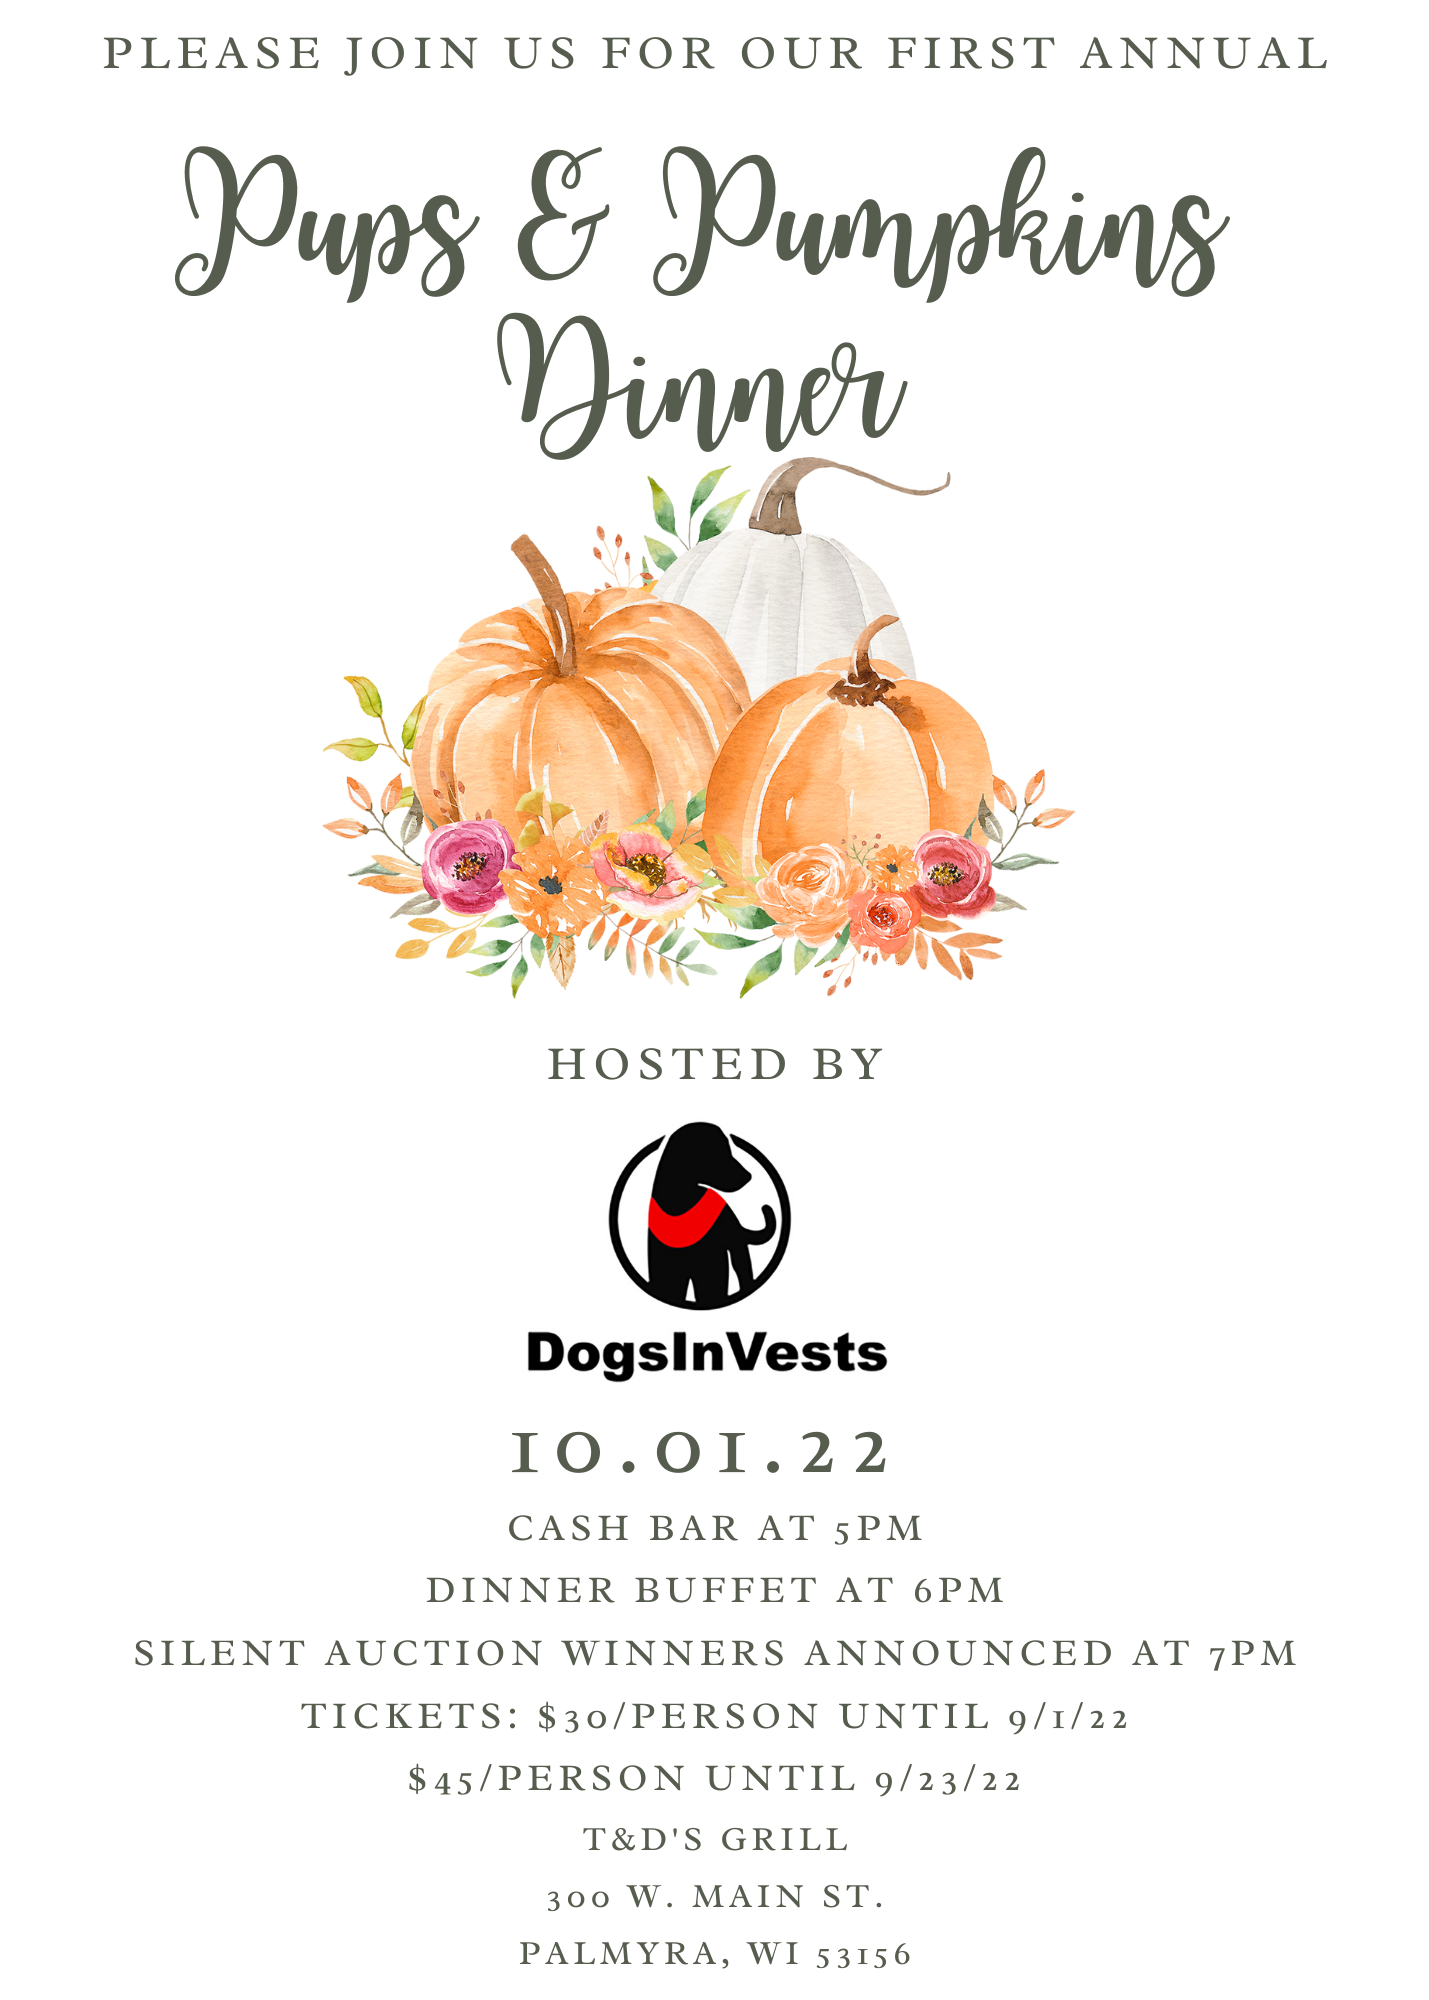 Pups & Pumpkins Dinner and Silent Auction Fundraiser